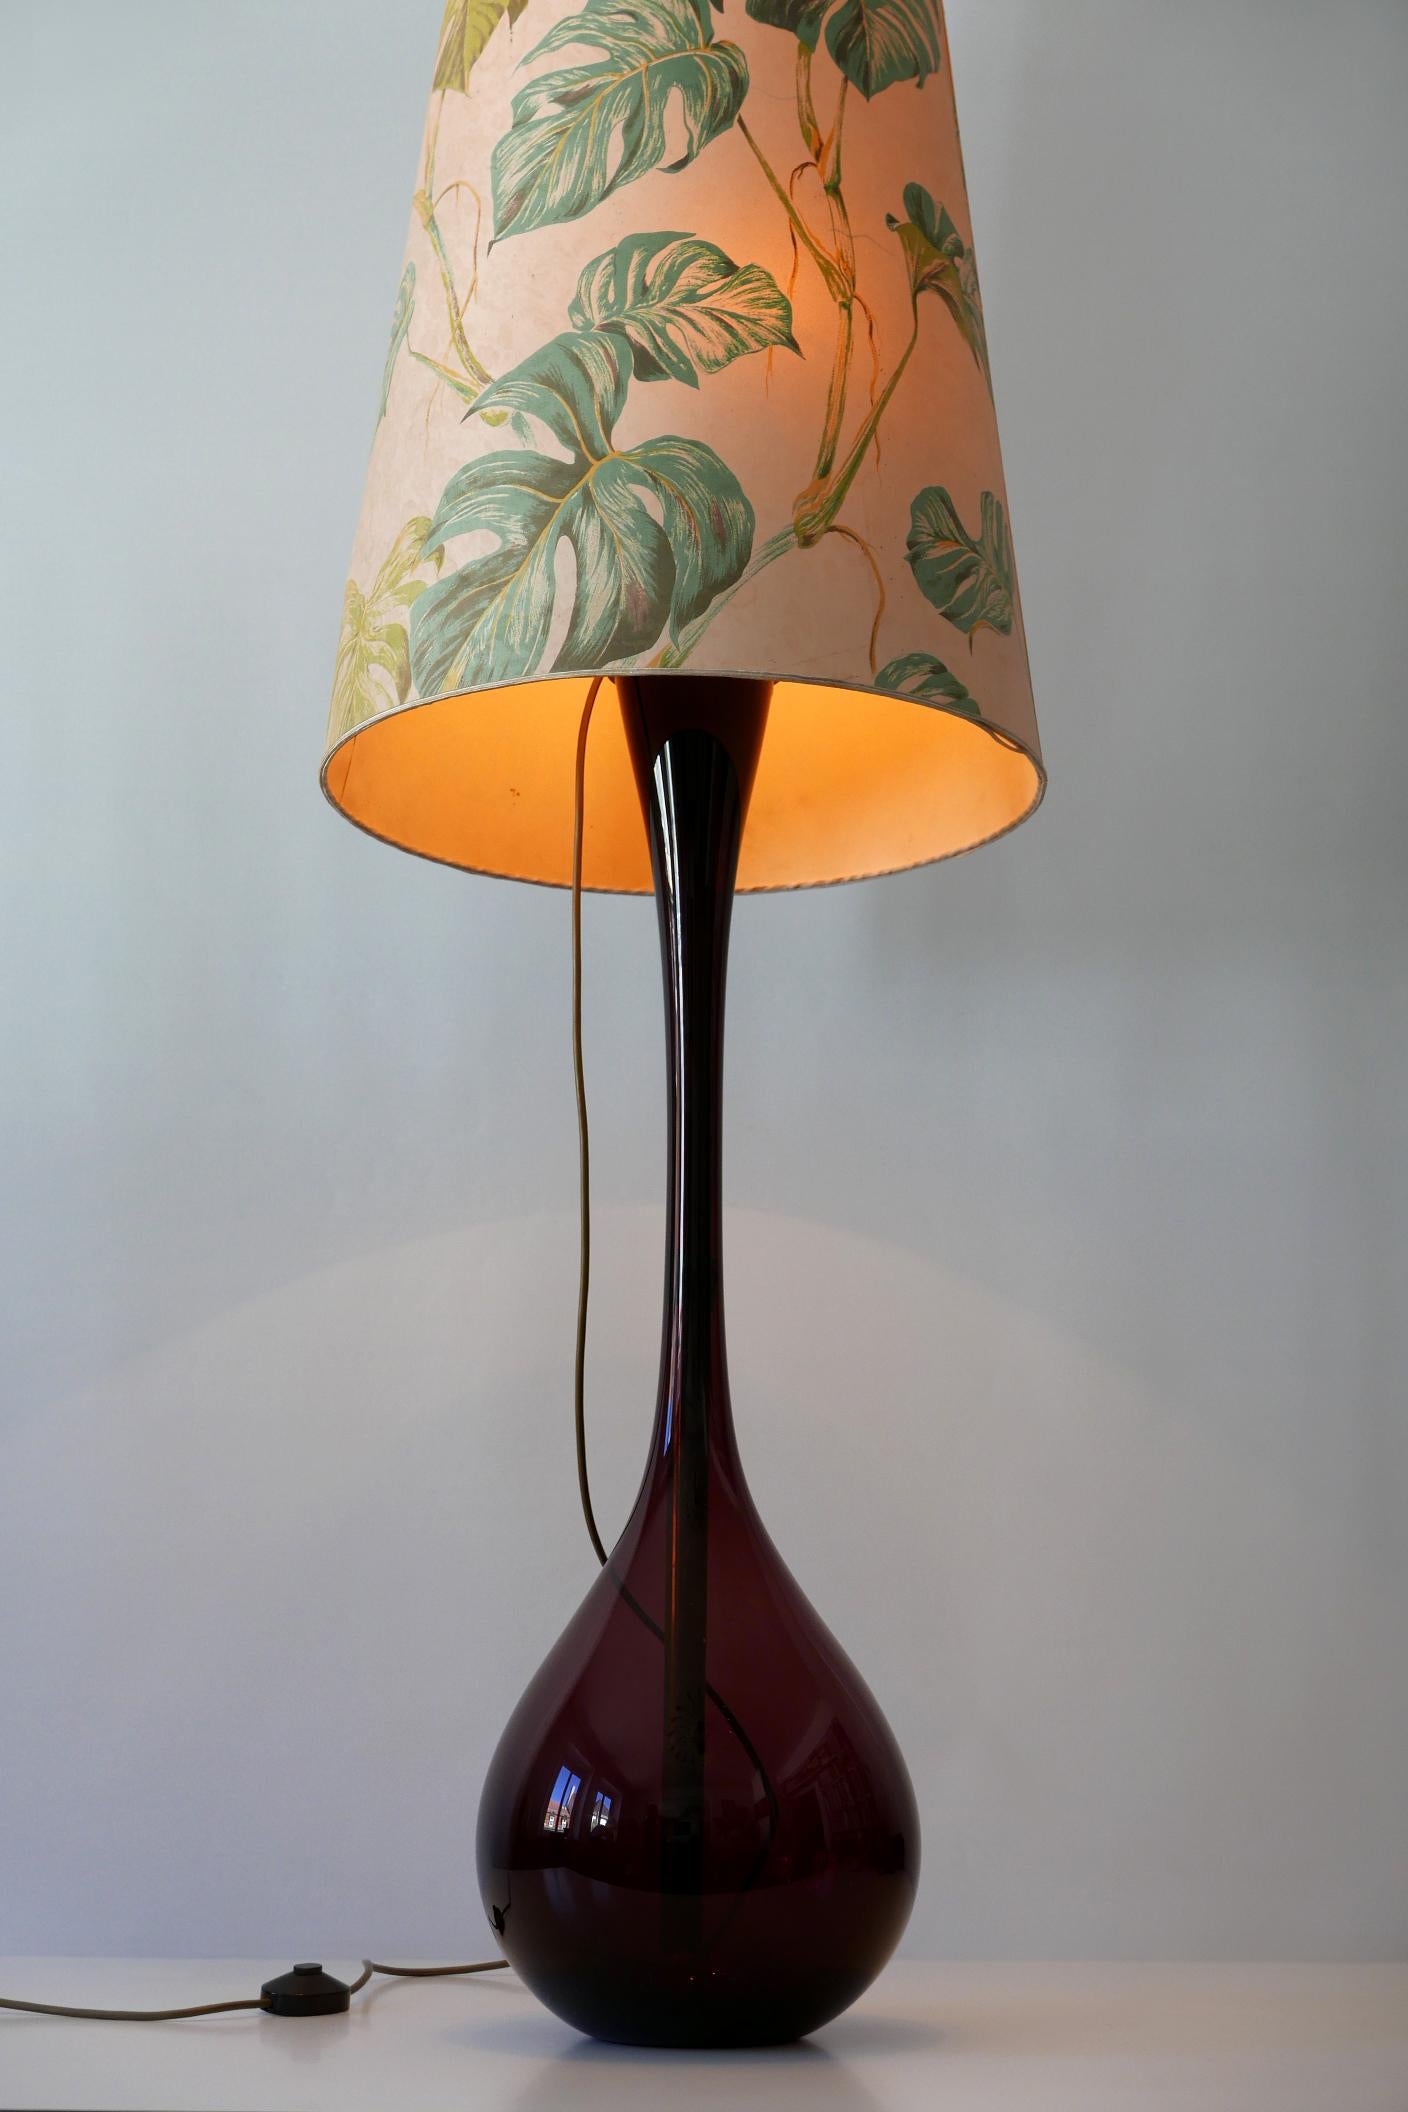 Large Mid-Century Modern Floor Lamp by Arthur Percy for Gullaskruf 1950s, Sweden For Sale 5